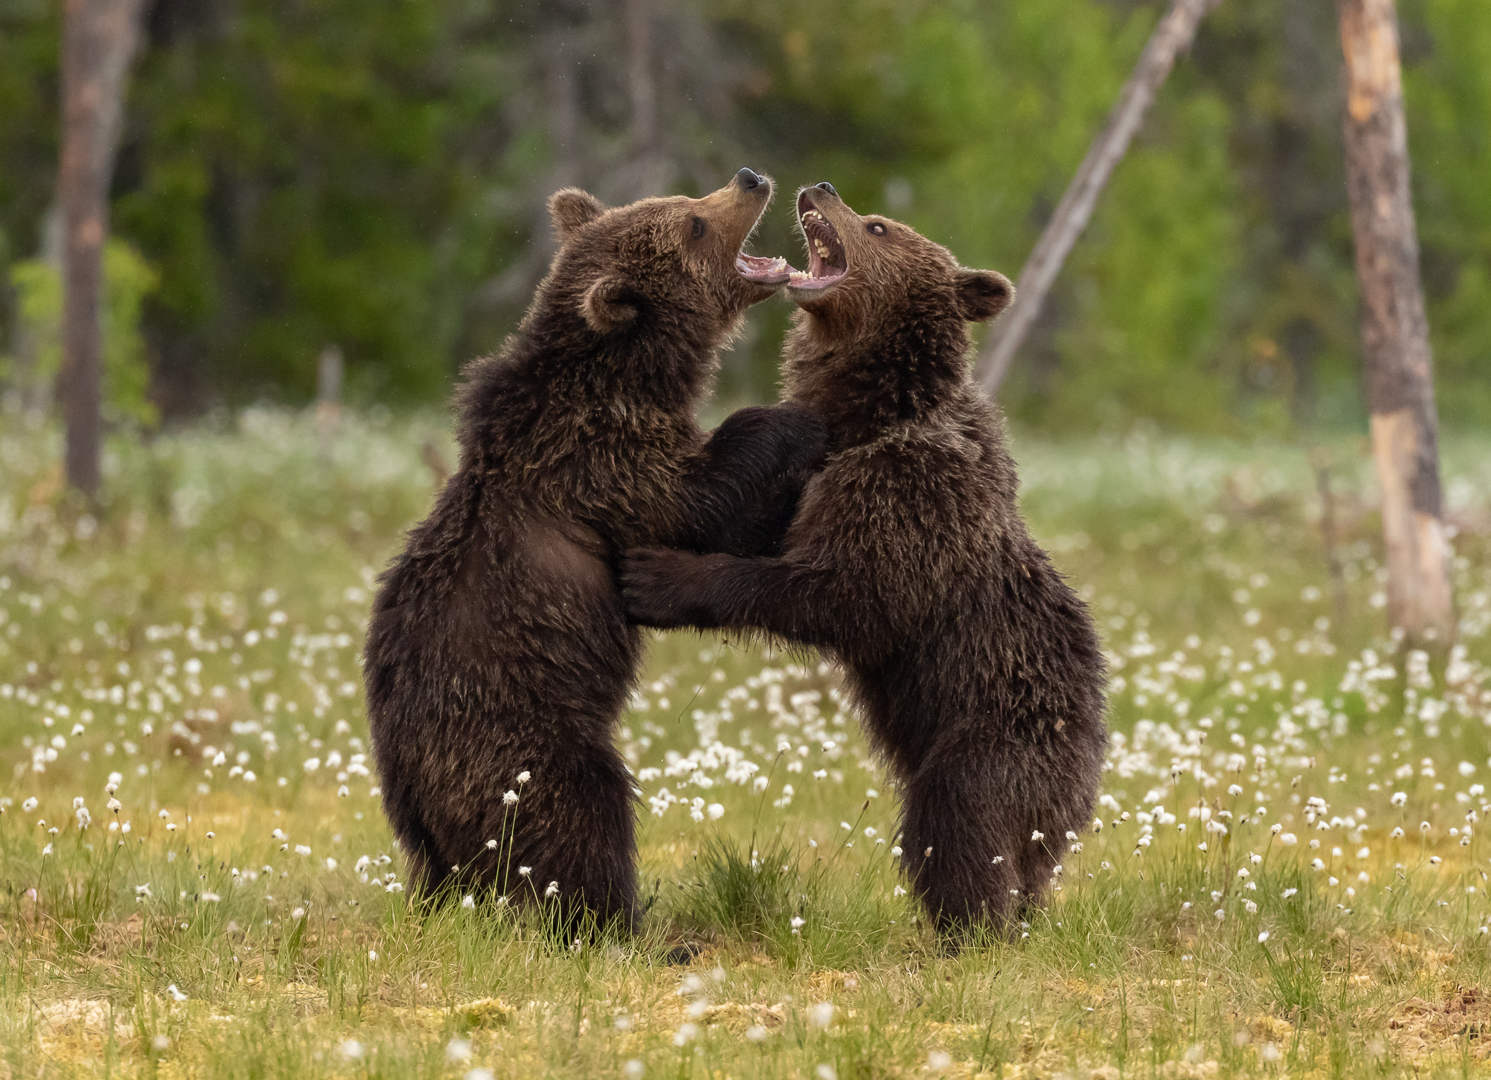 Bear play fight (Anita Price)